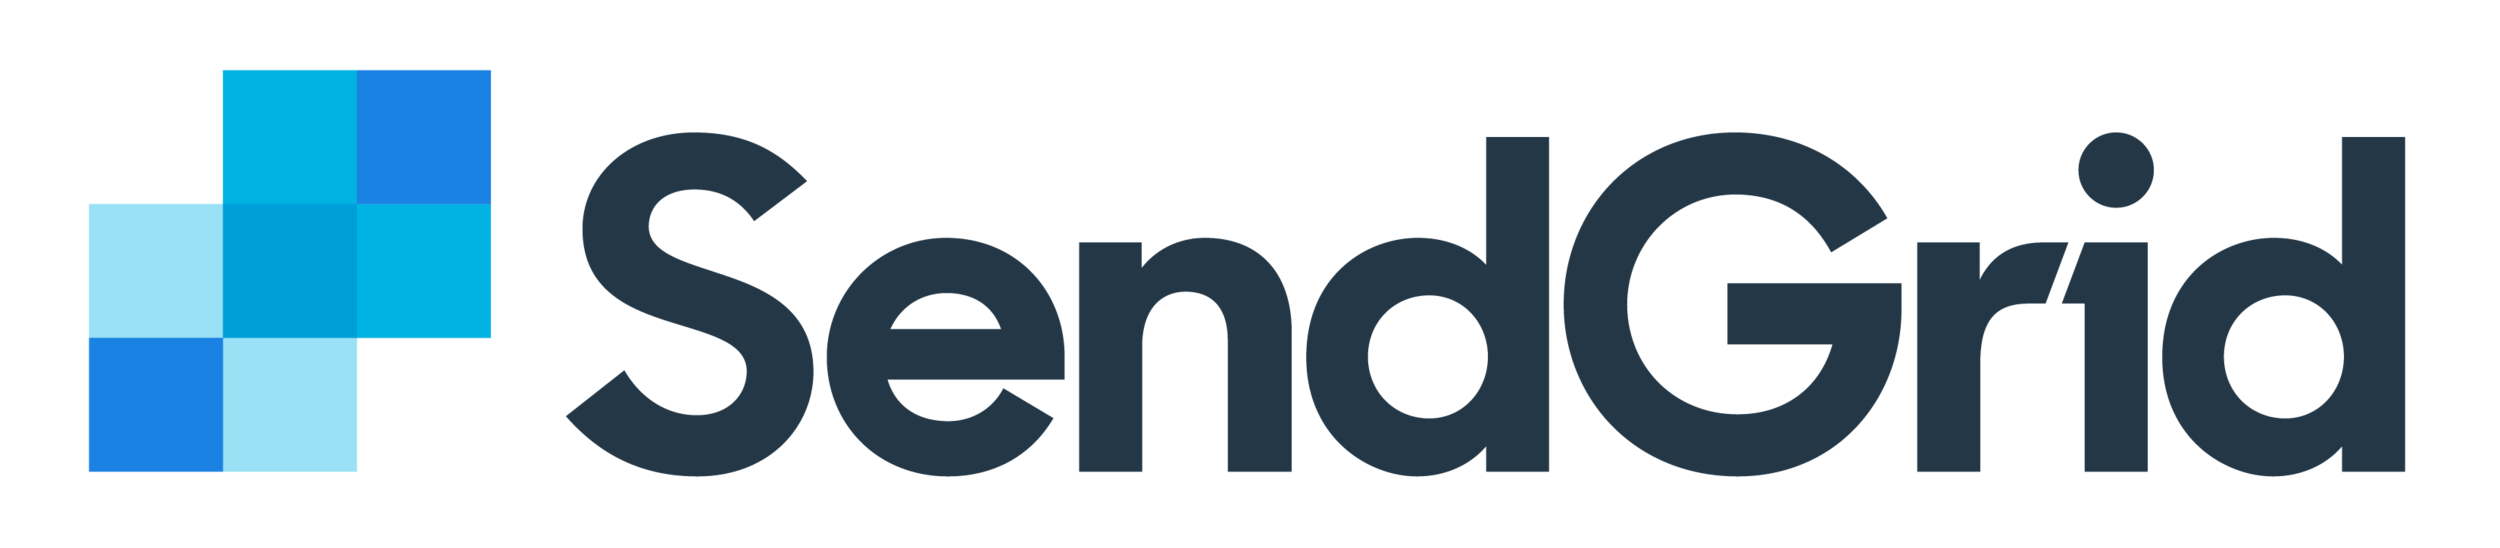 sendgrid-logo-dark.png